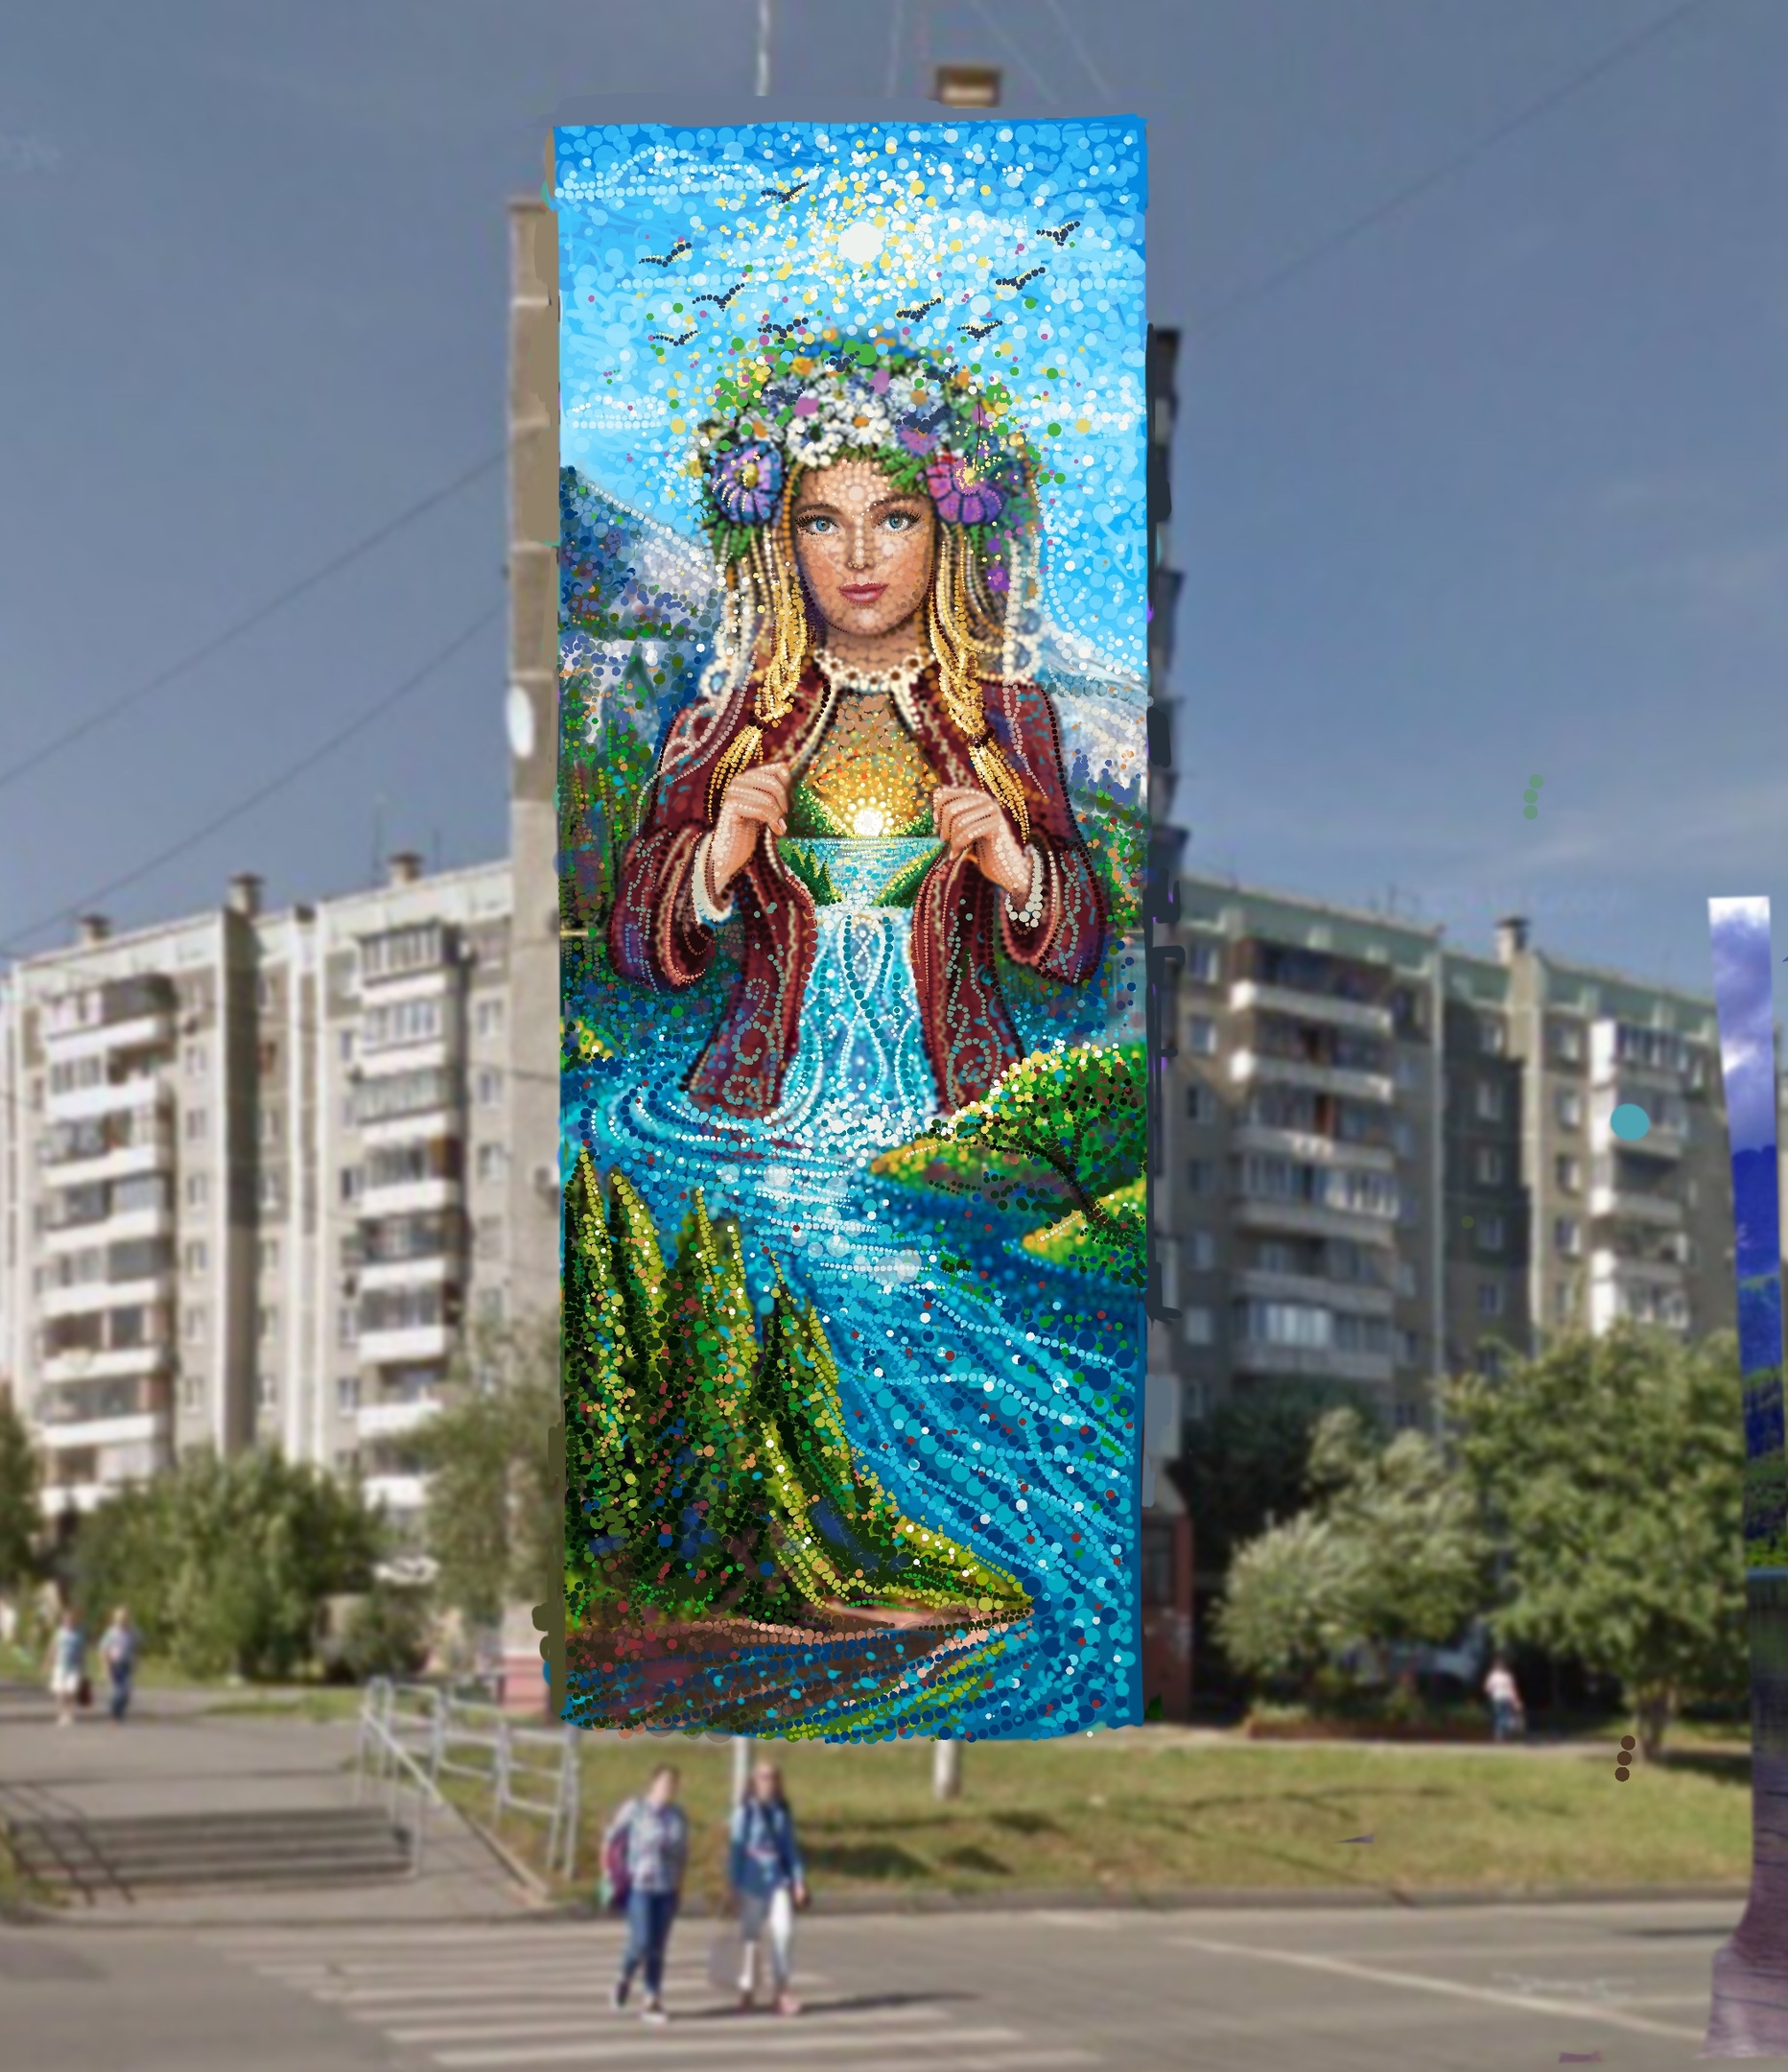 Художник из Казани Дамир Бозик предложил Челябинску образ, похожий на Хозяйку Медной горы из сказов Бажова